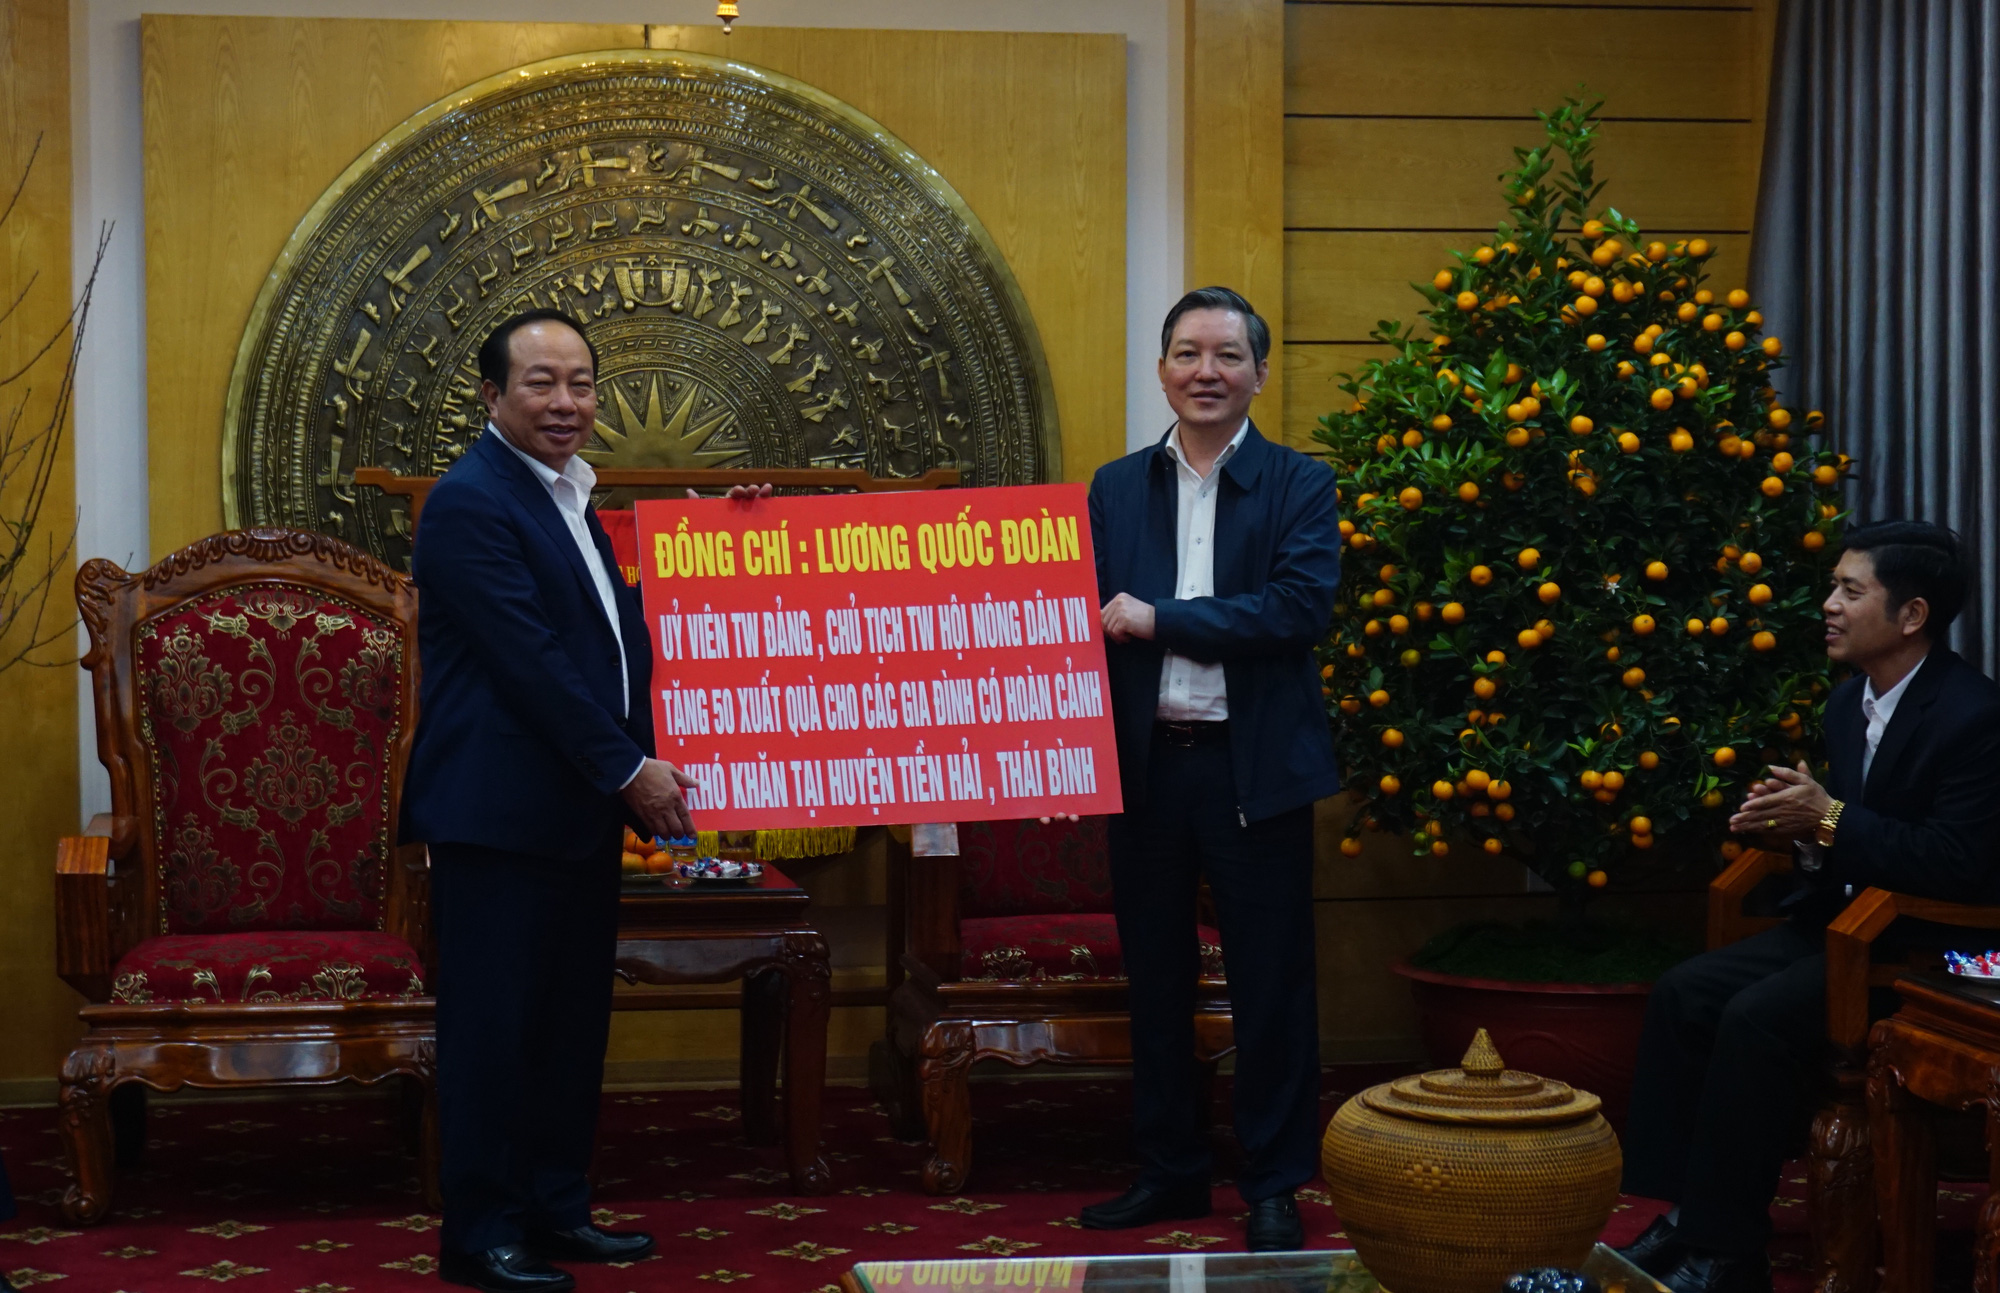 Chủ tịch Trung ương Hội NDVN Lương Quốc Đoàn tặng quà Tết người nghèo tại Tiền Hải, Thái Bình - Ảnh 4.